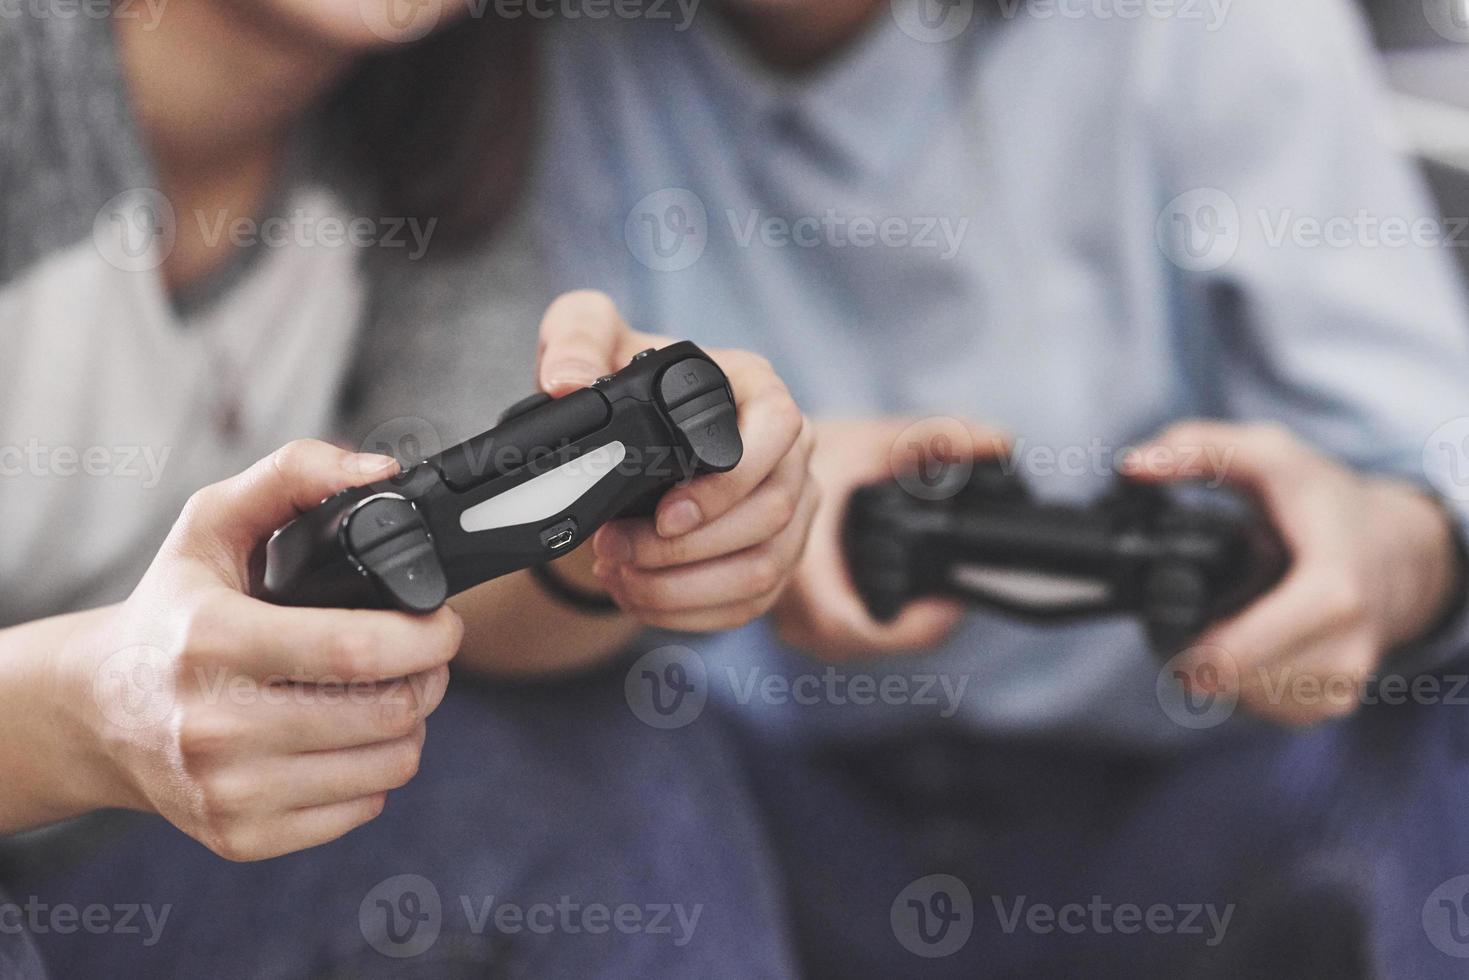 tvillingsyster systrar spelar på konsolen. tjejer håller joysticks i händerna och har kul foto